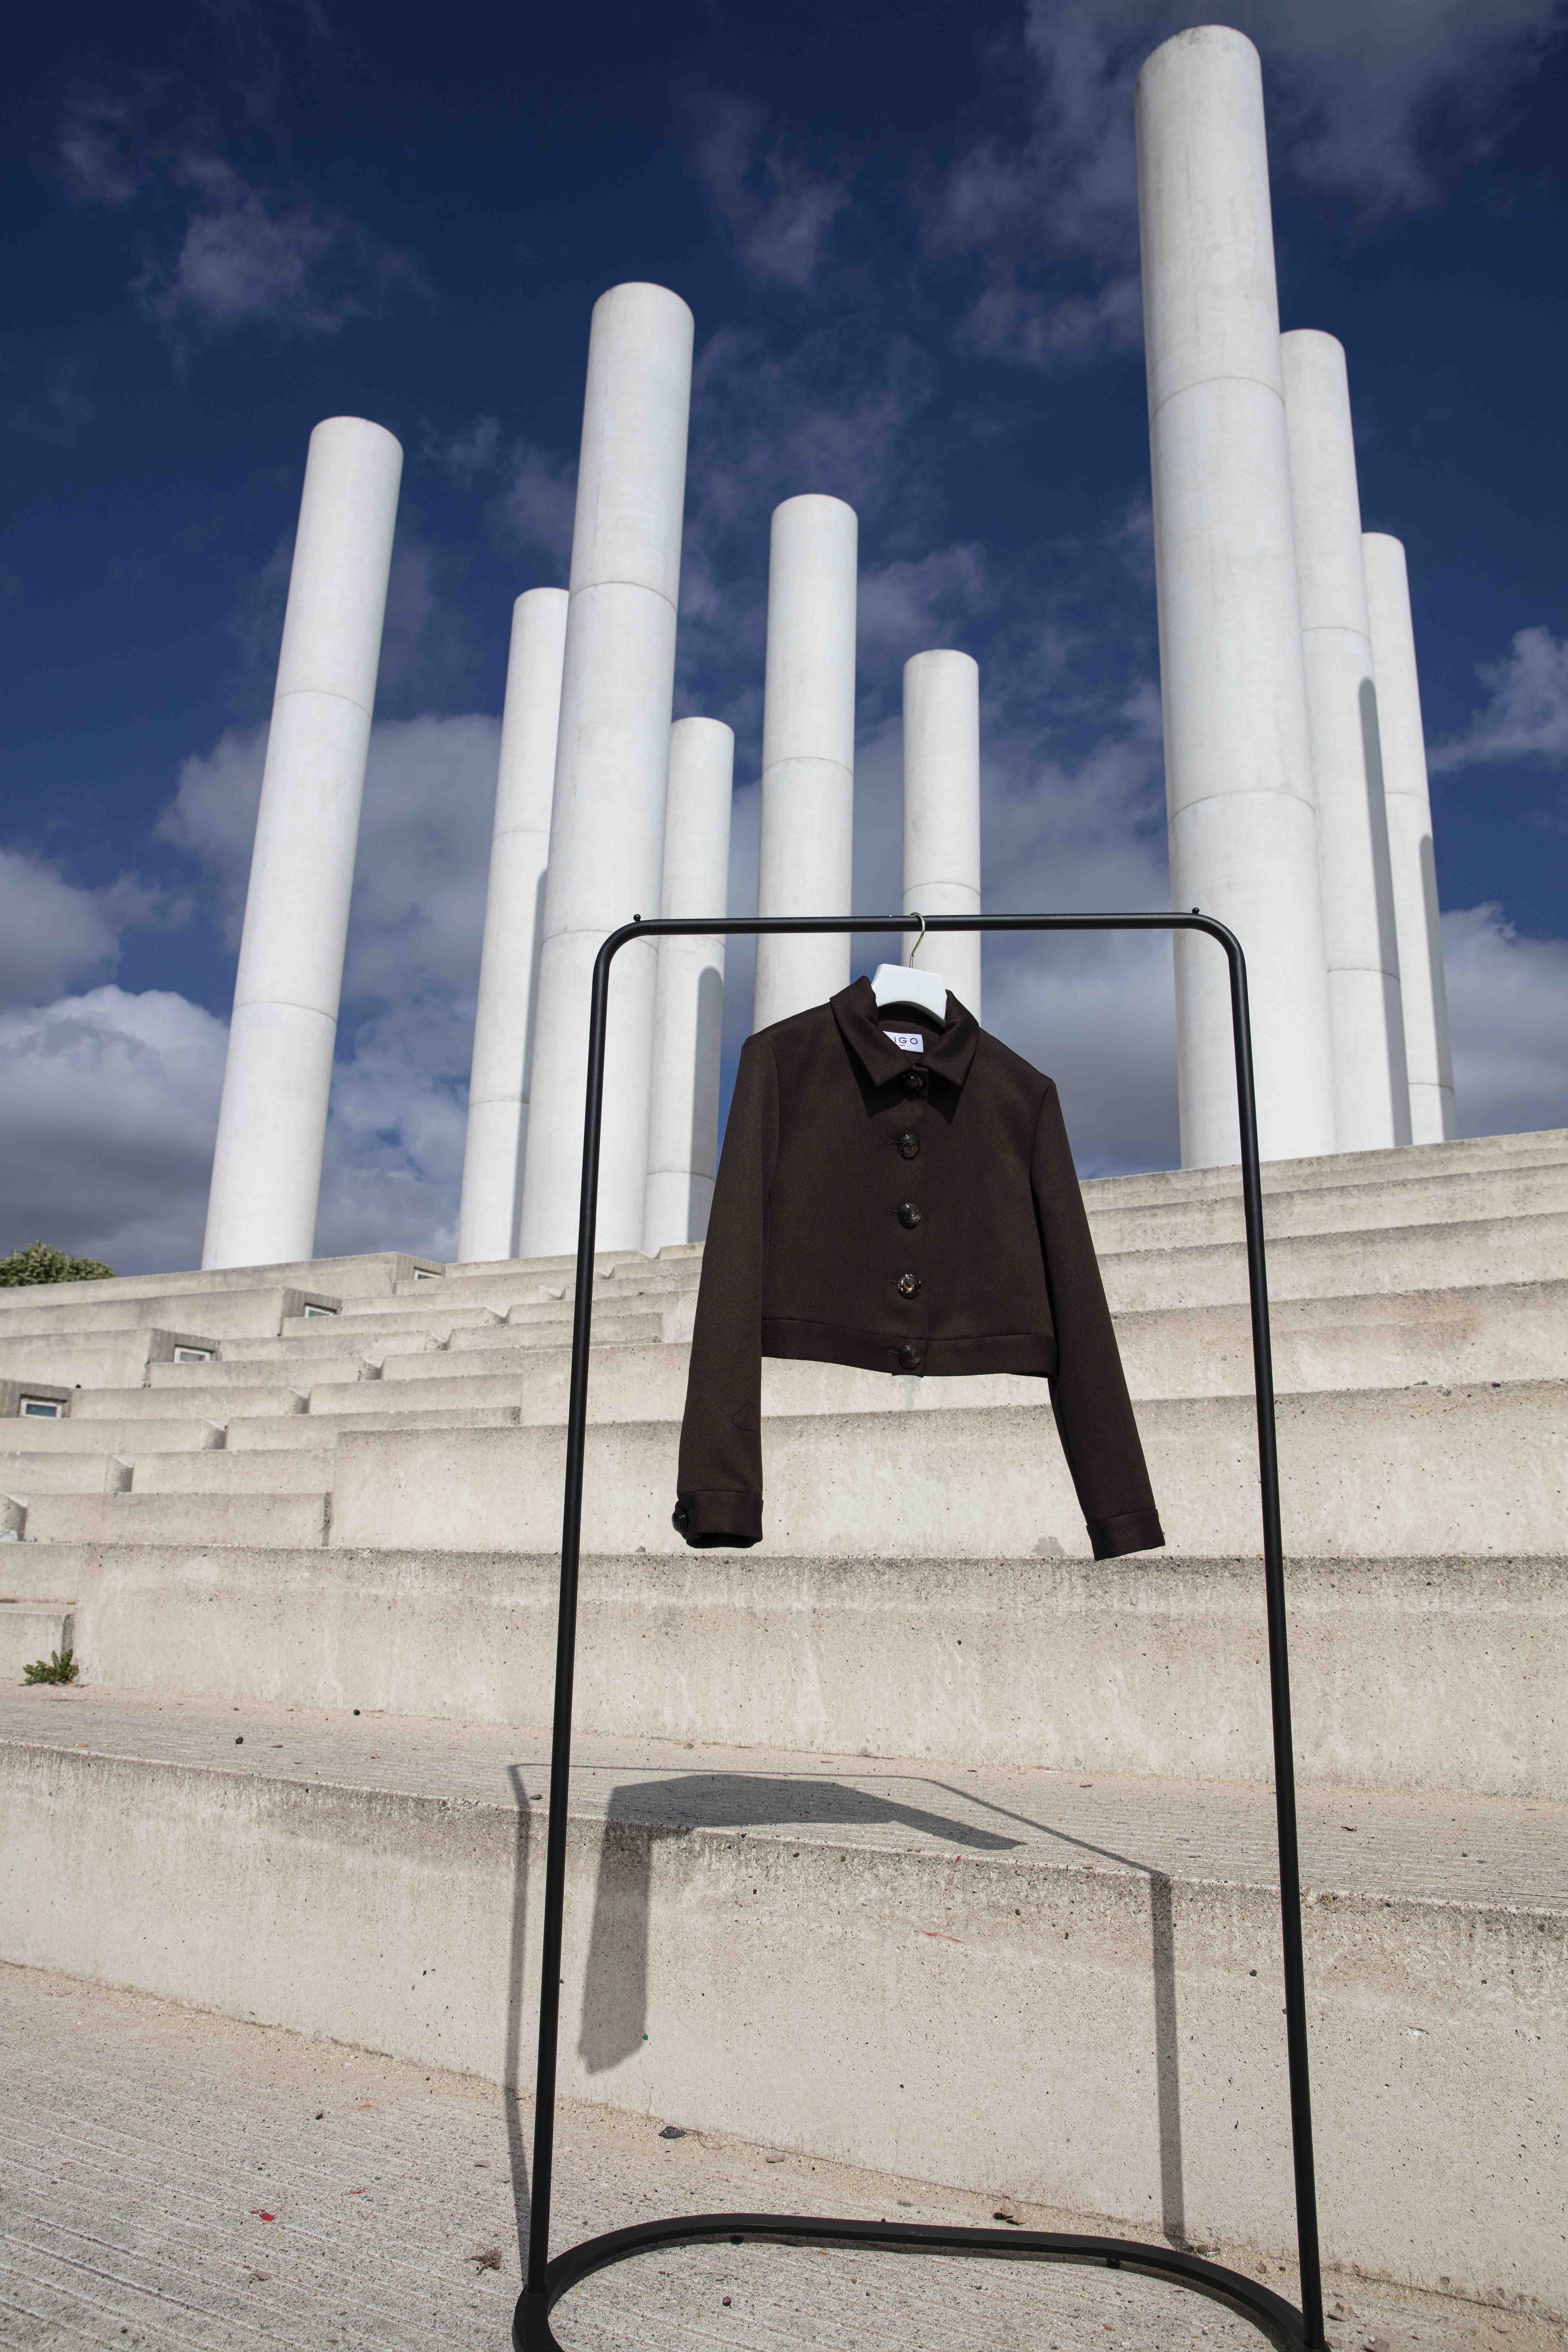 Découvrez Marylise, notre veste en crop denim, imaginée et conçue par les deux designers Michele Emanuele et Veronica Marucci au sein de leur atelier parisien. D'autres couleurs et matières sont disponibles sur demande.